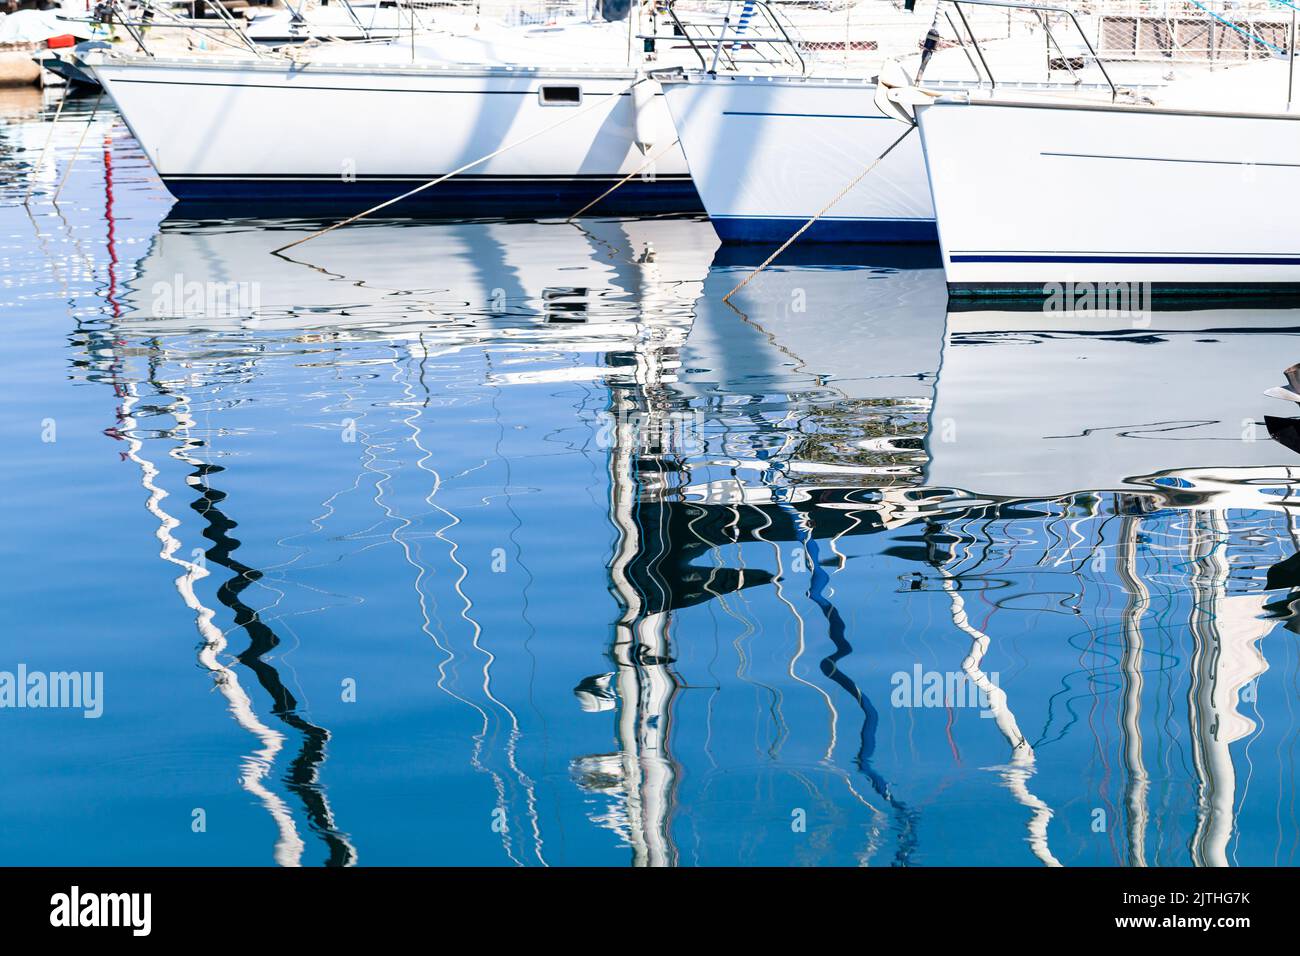 Les yachts à voile amarrés dans la marina par une journée ensoleillée se reflètent dans l'eau de mer ondulée. Photo d'arrière-plan abstraite Banque D'Images